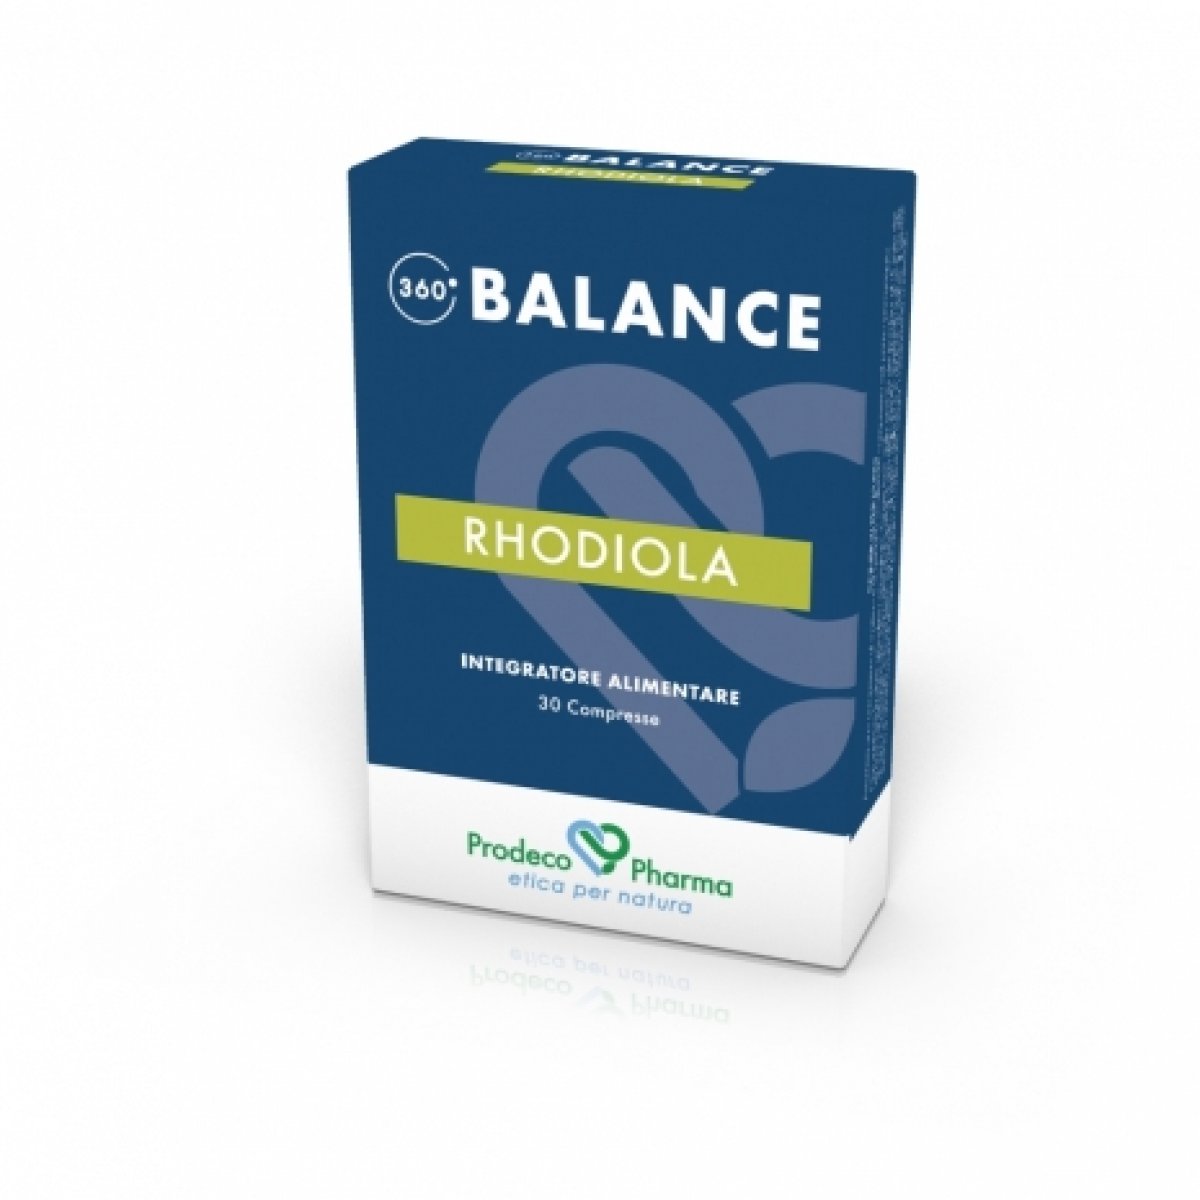 360 BALANCE RHODIOLA 30 cpr - Prodeco Pharma 360 BALANCE RHODIOLA è un integratore alimentare a base di Rhodiola rosea e crenulata ad azione tonico-adattogena. 30 compresse